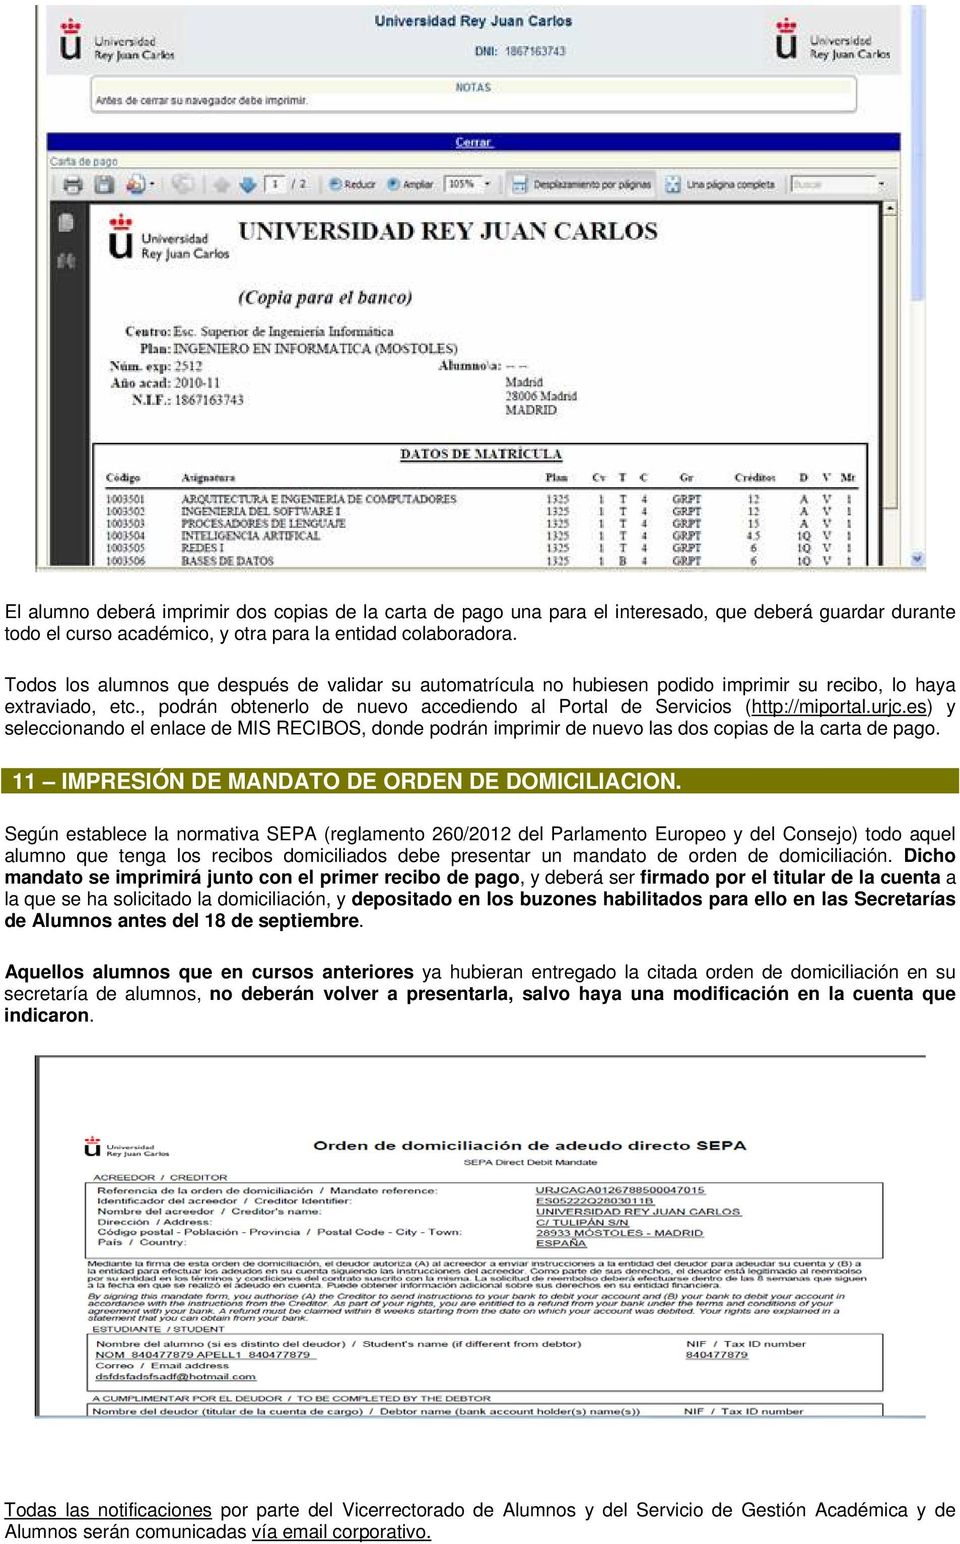 urjc.es) y seleccionando el enlace de MIS RECIBOS, donde podrán imprimir de nuevo las dos copias de la carta de pago. 11 IMPRESIÓN DE MANDATO DE ORDEN DE DOMICILIACION.